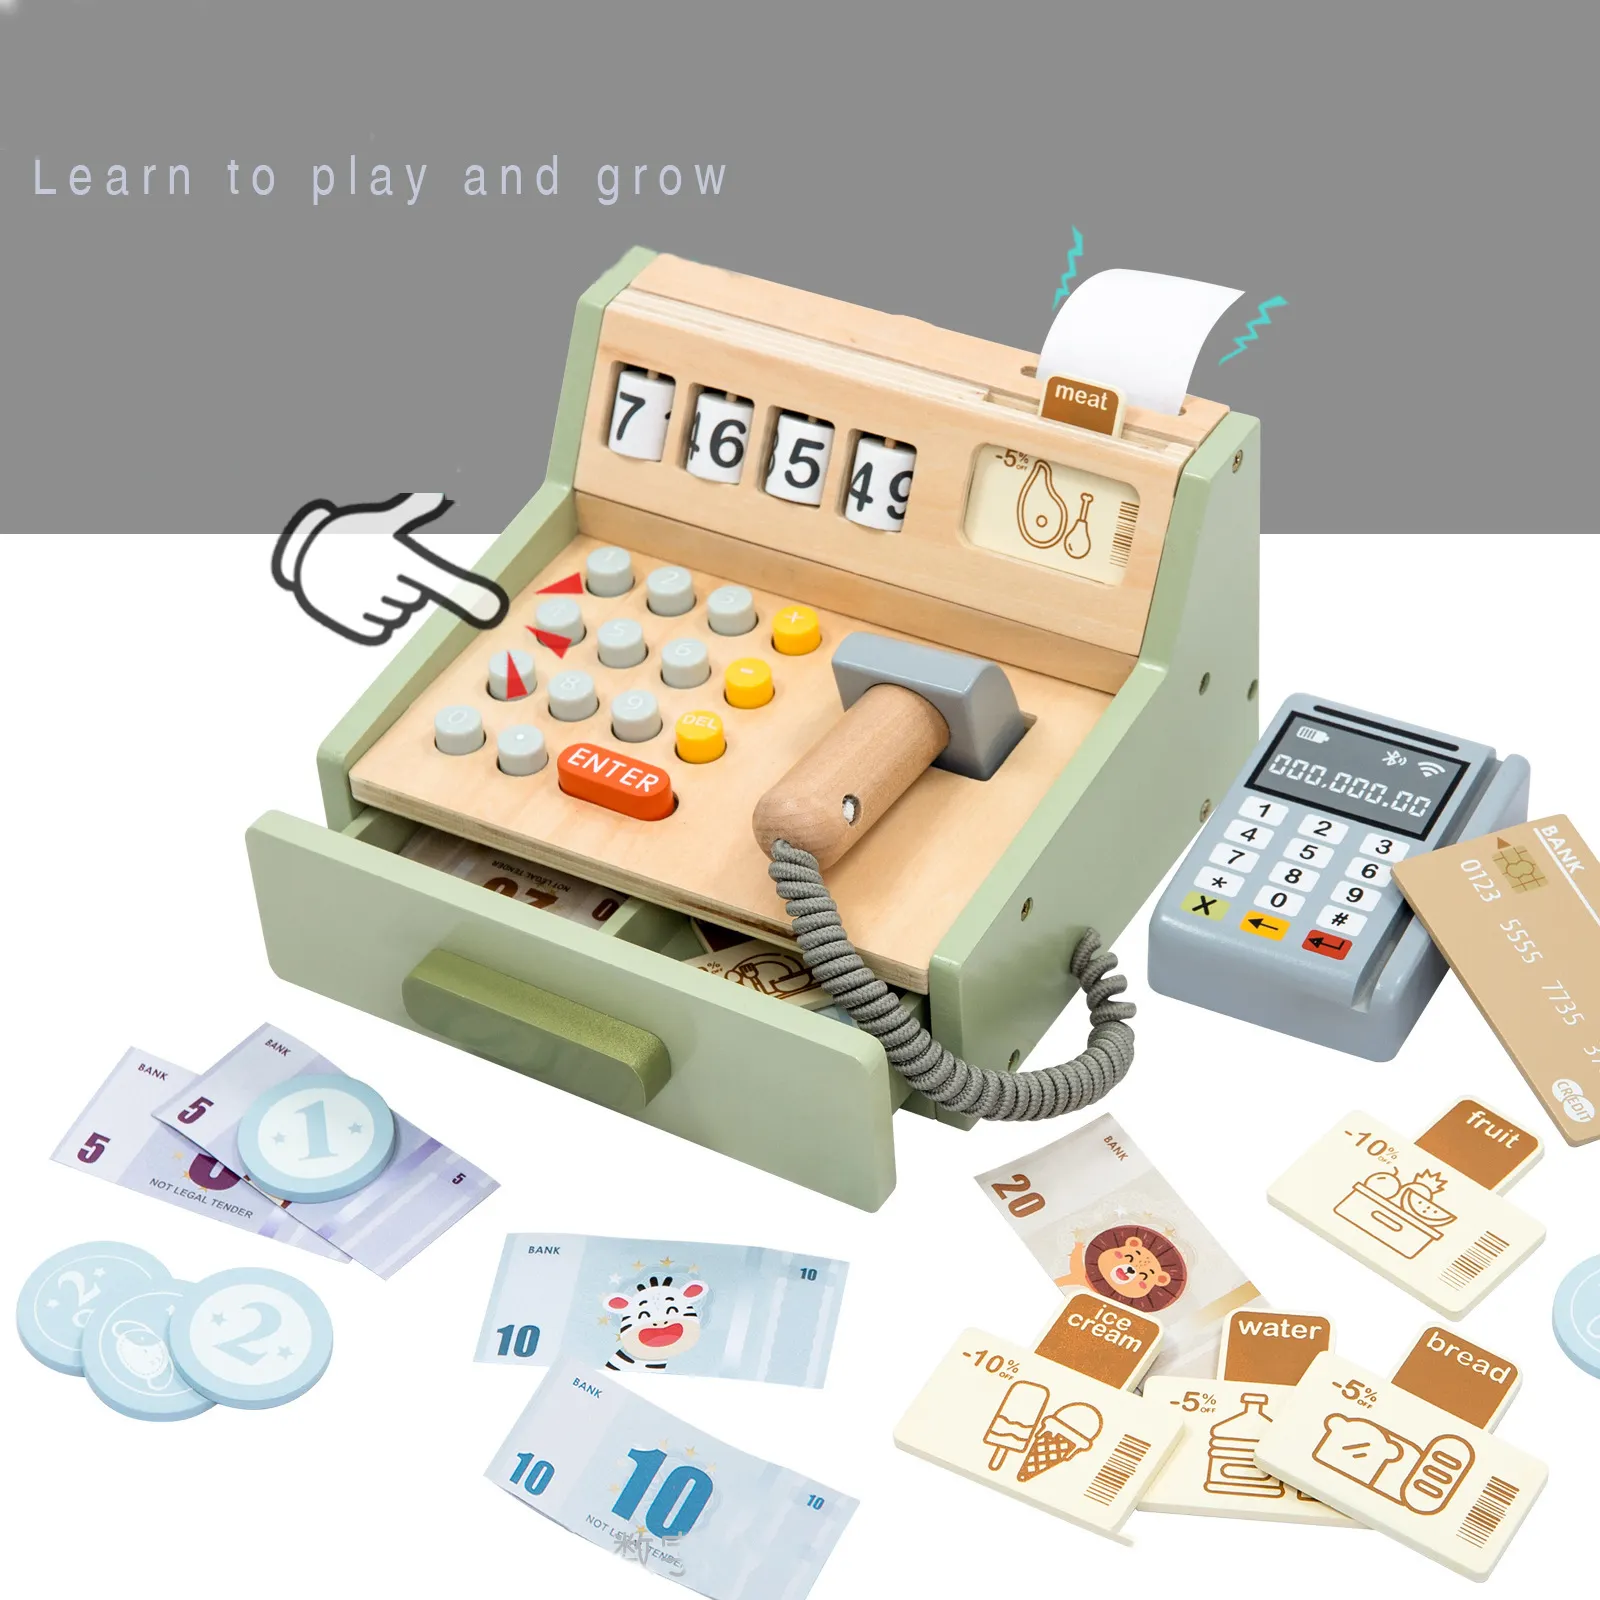 Bambini gioco di ruolo supermercato cassiere bambino in legno registratore di cassa giocattolo in legno didattico di matematica giocattolo per 1 anno bambino